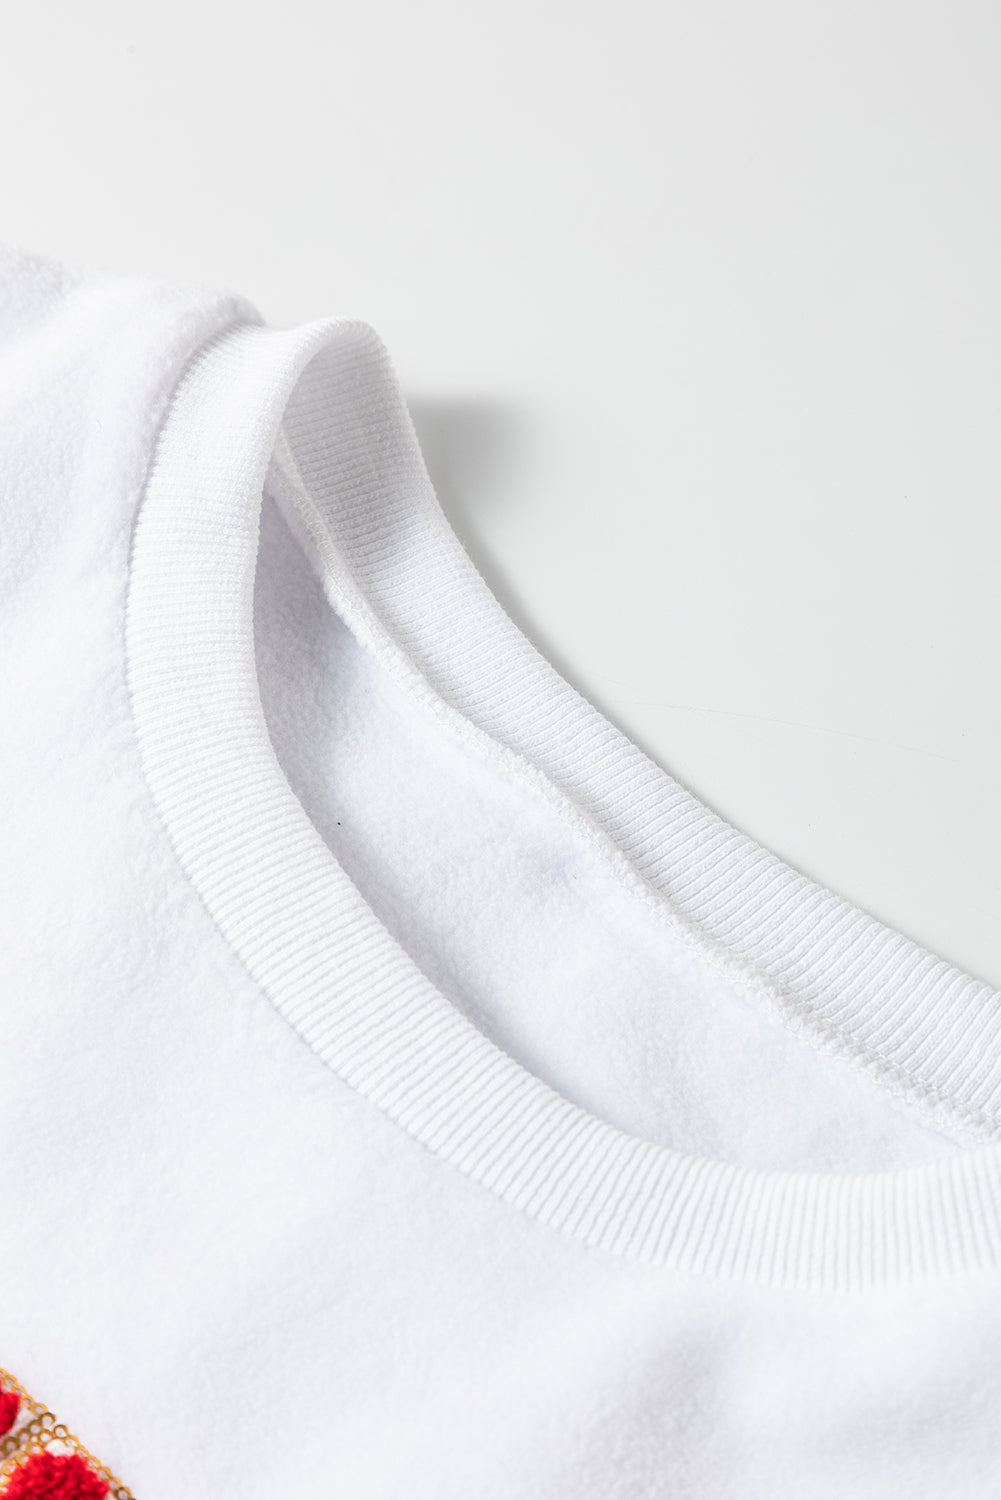 Weißes HOWDY SANTA Baggy-Sweatshirt mit Chenille-Buchstaben